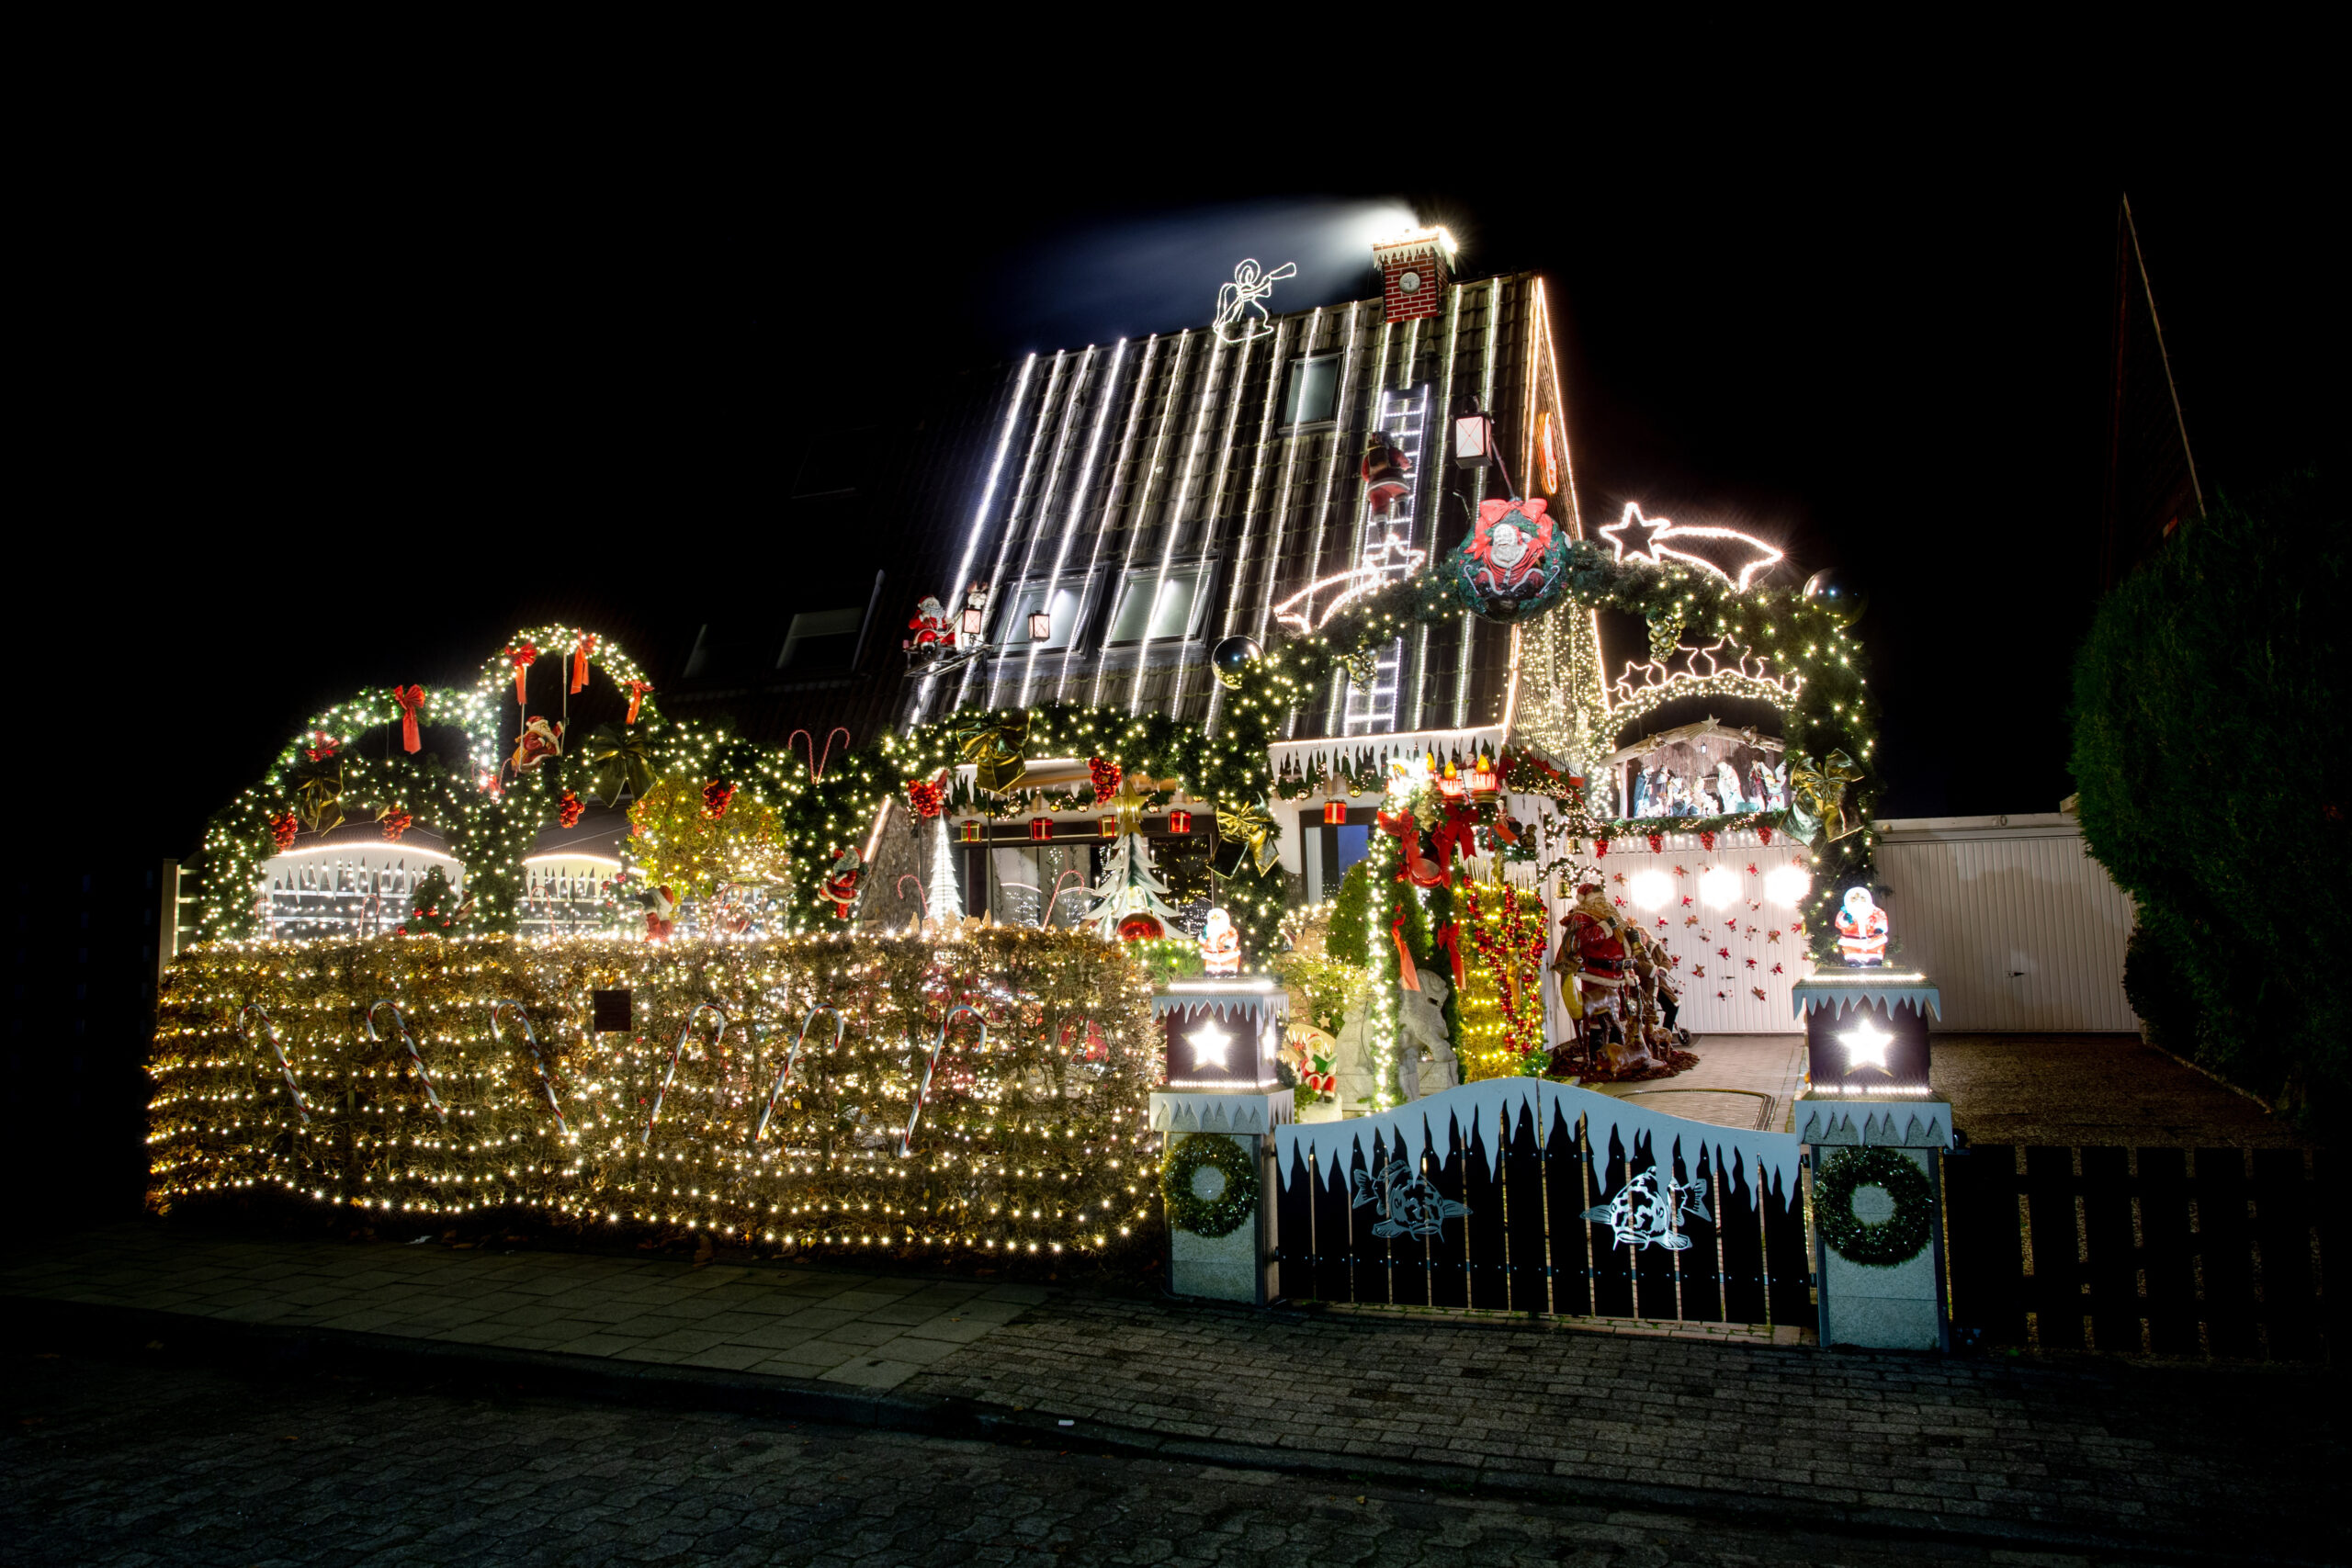 Zahlreiche Lichter erstrahlen am weihnachtlich geschmückten Haus der Familie Borchart.